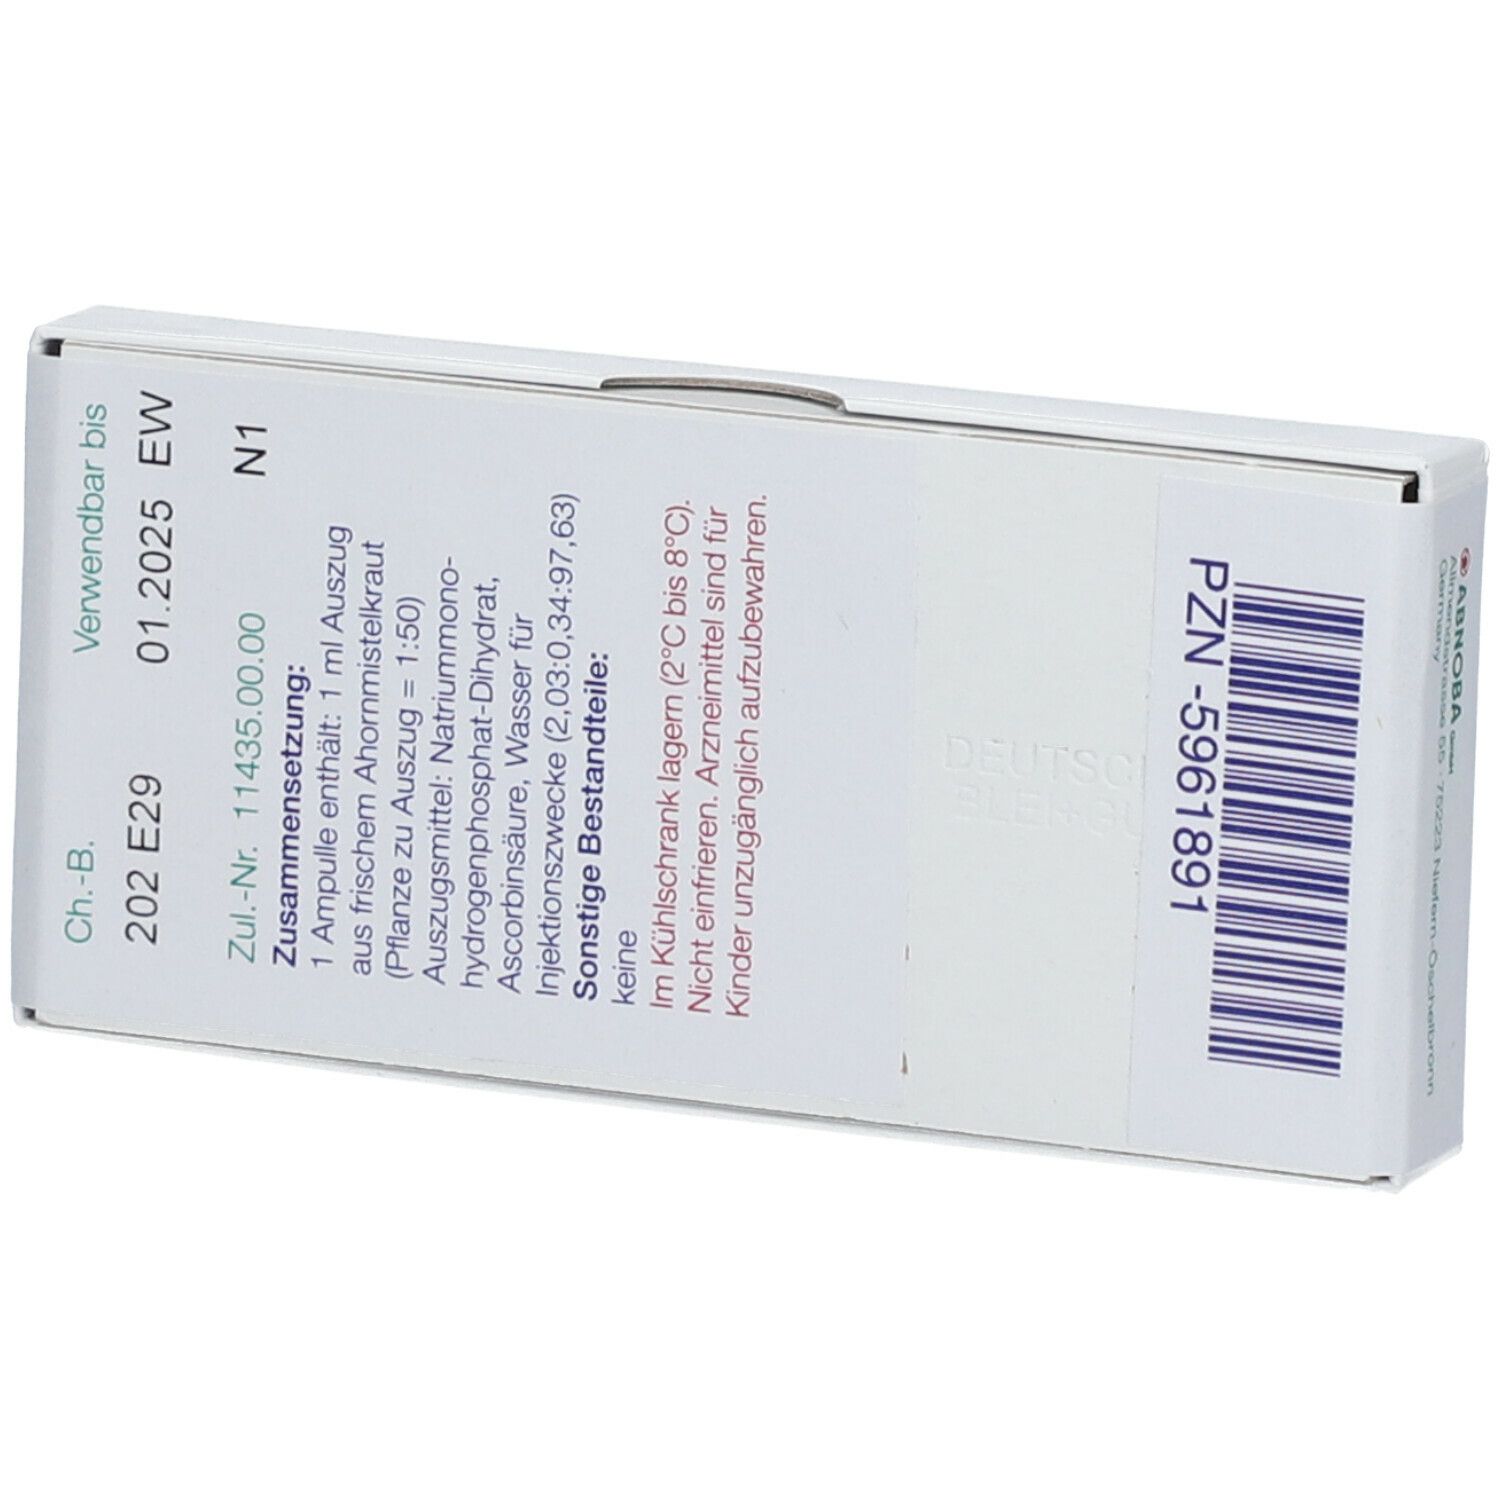 abnobaVISCUM® Aceris 20 mg Ampullen